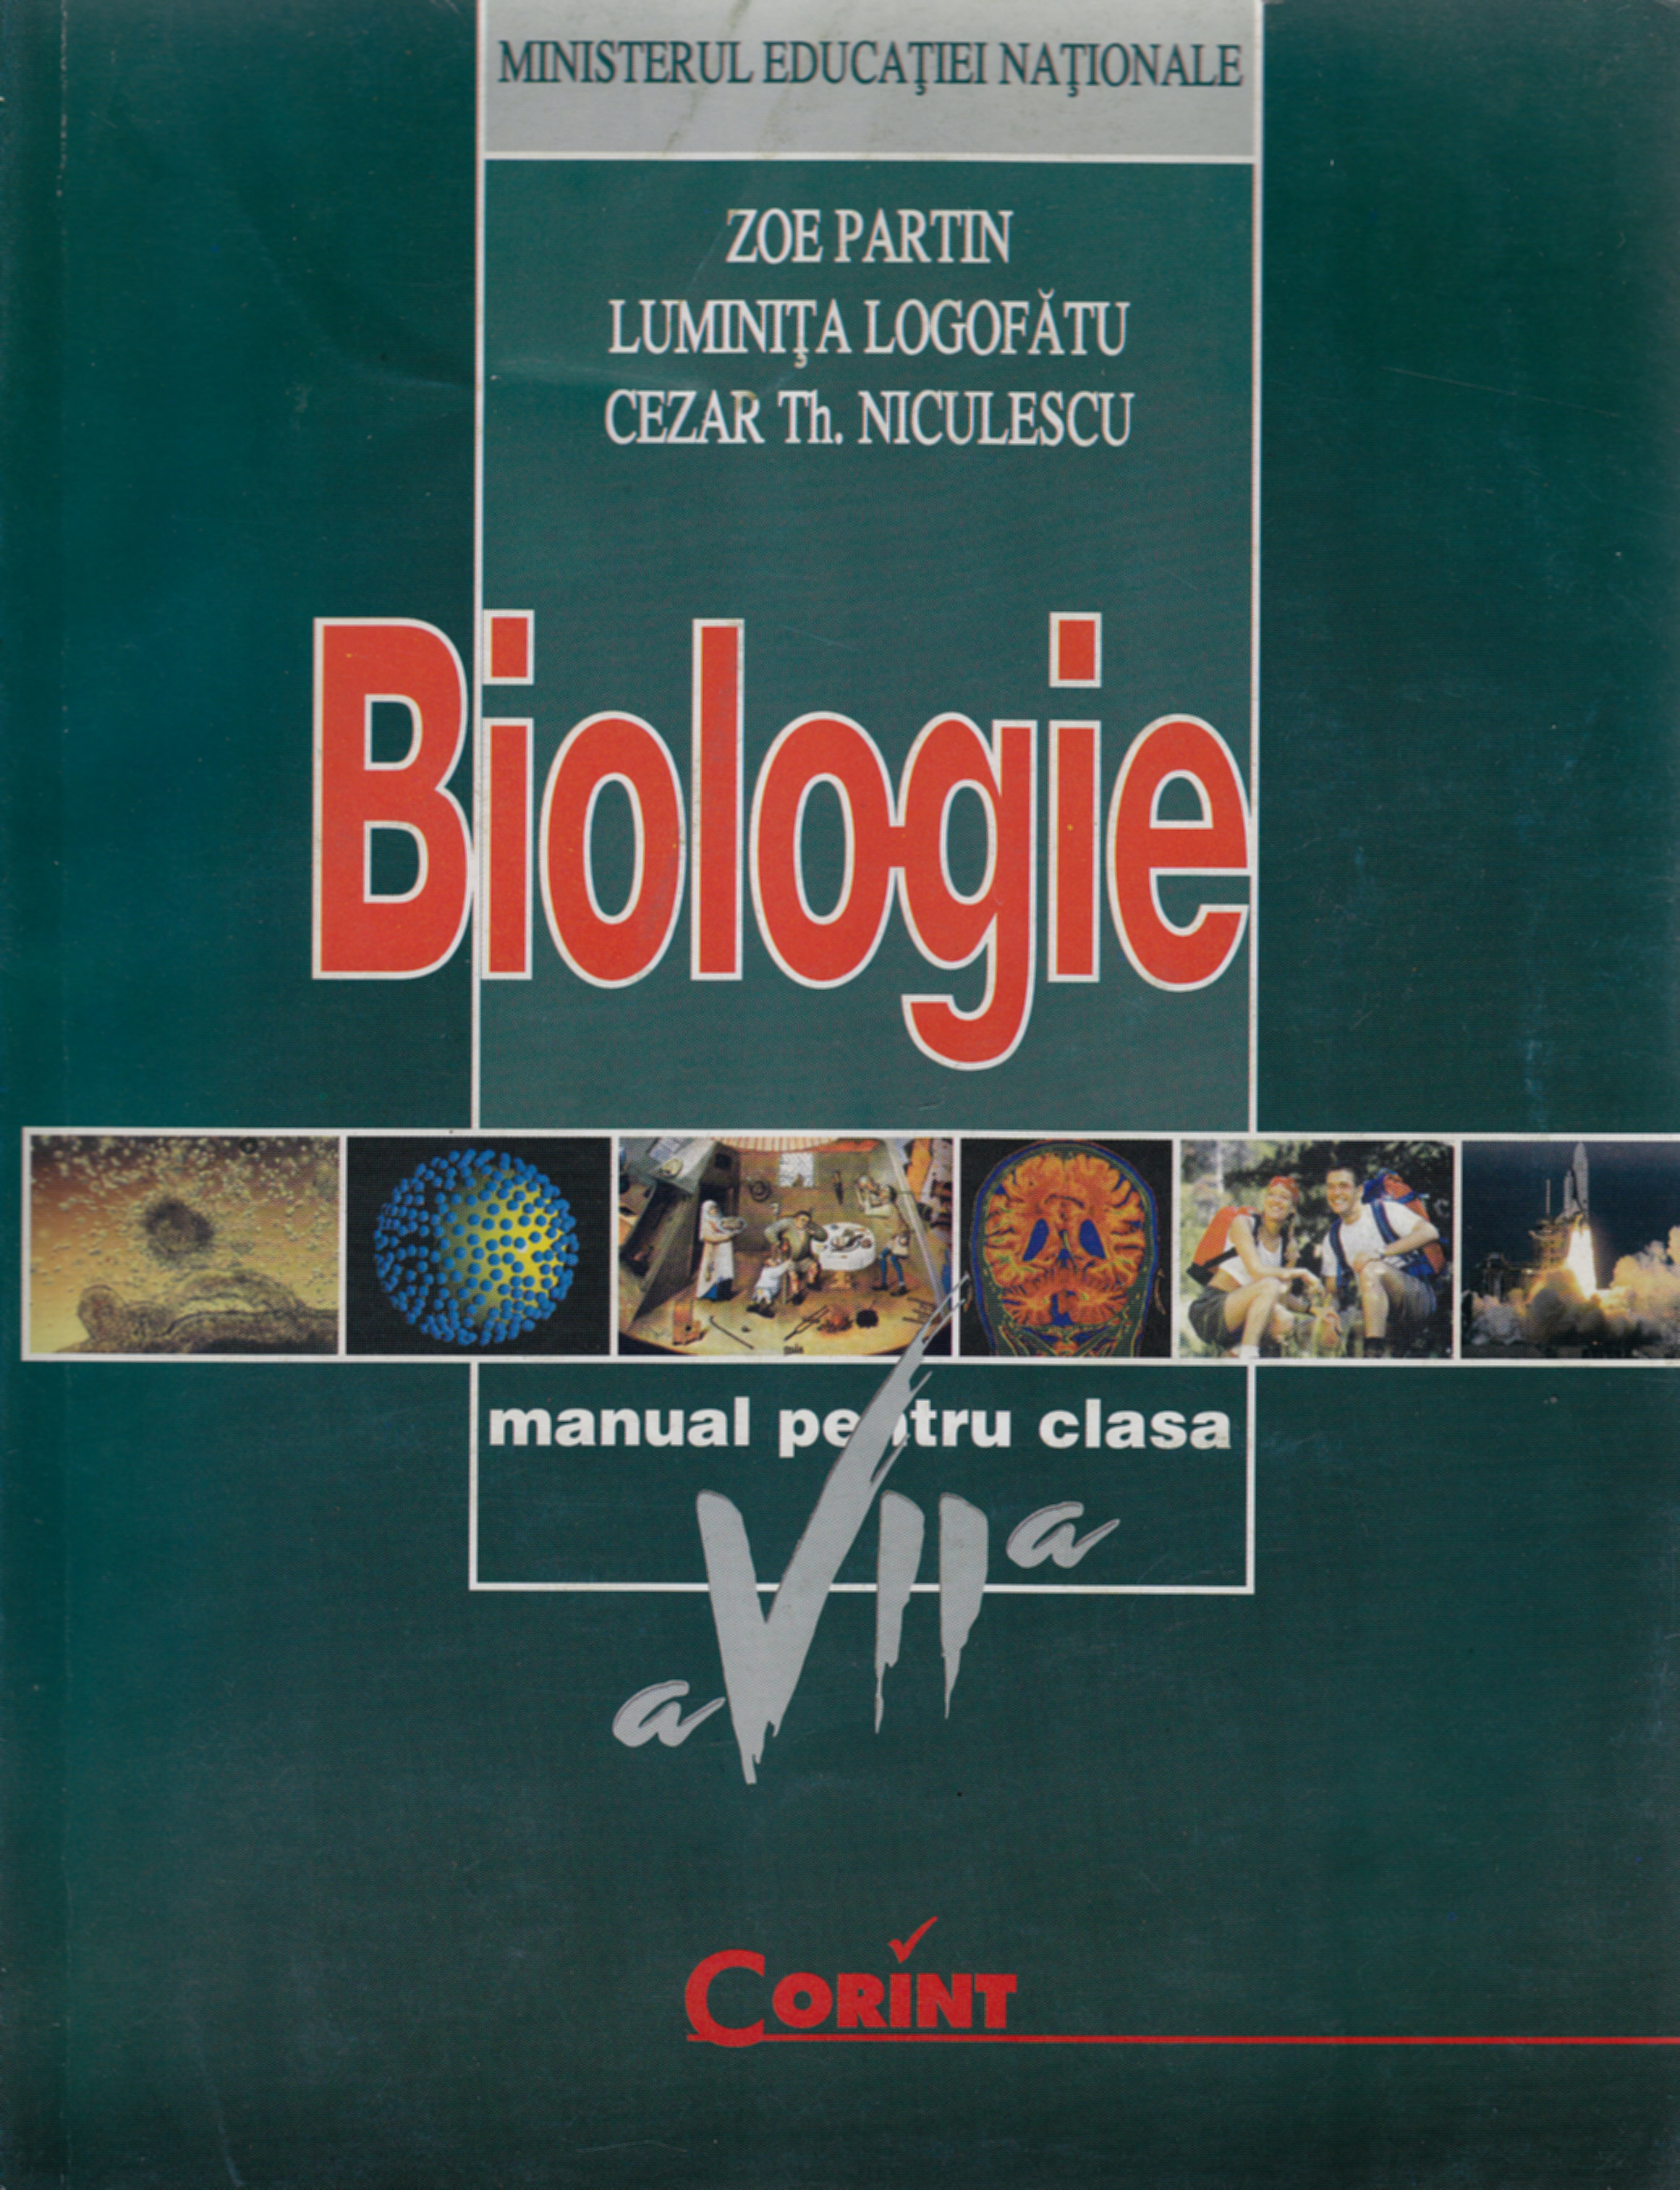 Biologie - Clasa 7 - Manual - Zoe Partin, Luminita Logofatu, Cezar Th. Niculescu